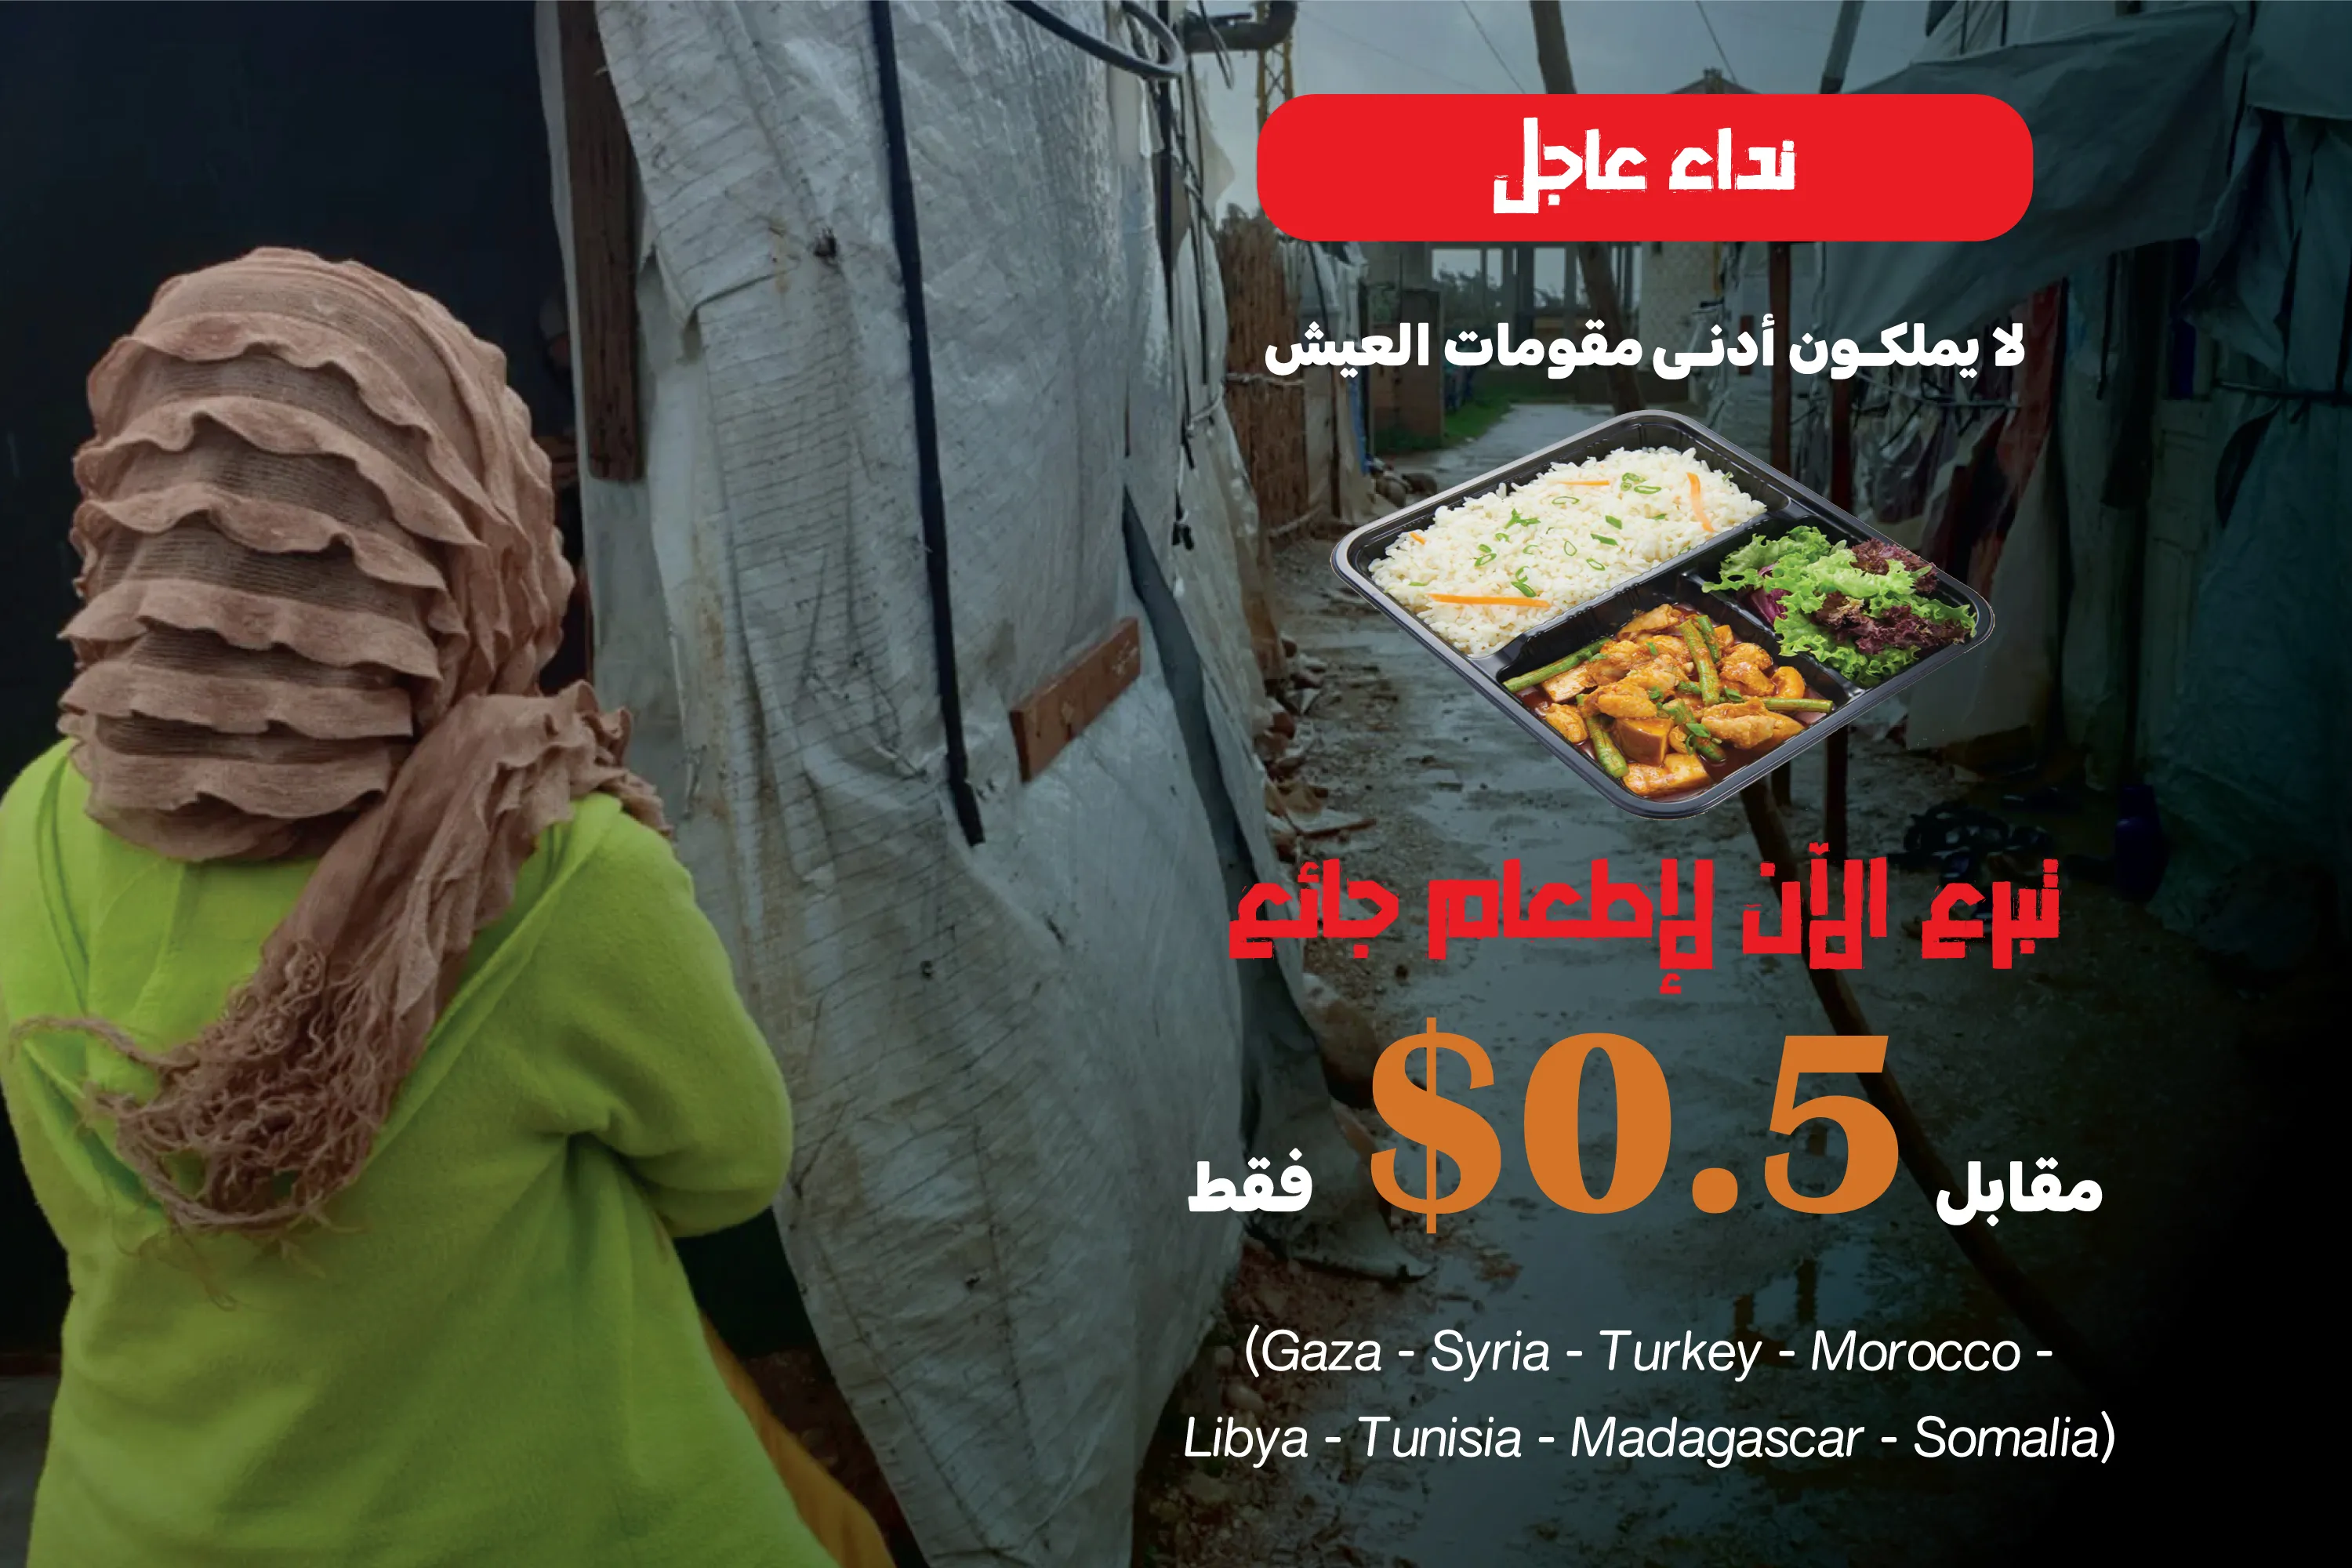 نداء عاجل - مشروع إطعام جائع مقابل وجبة بـ 0.5$